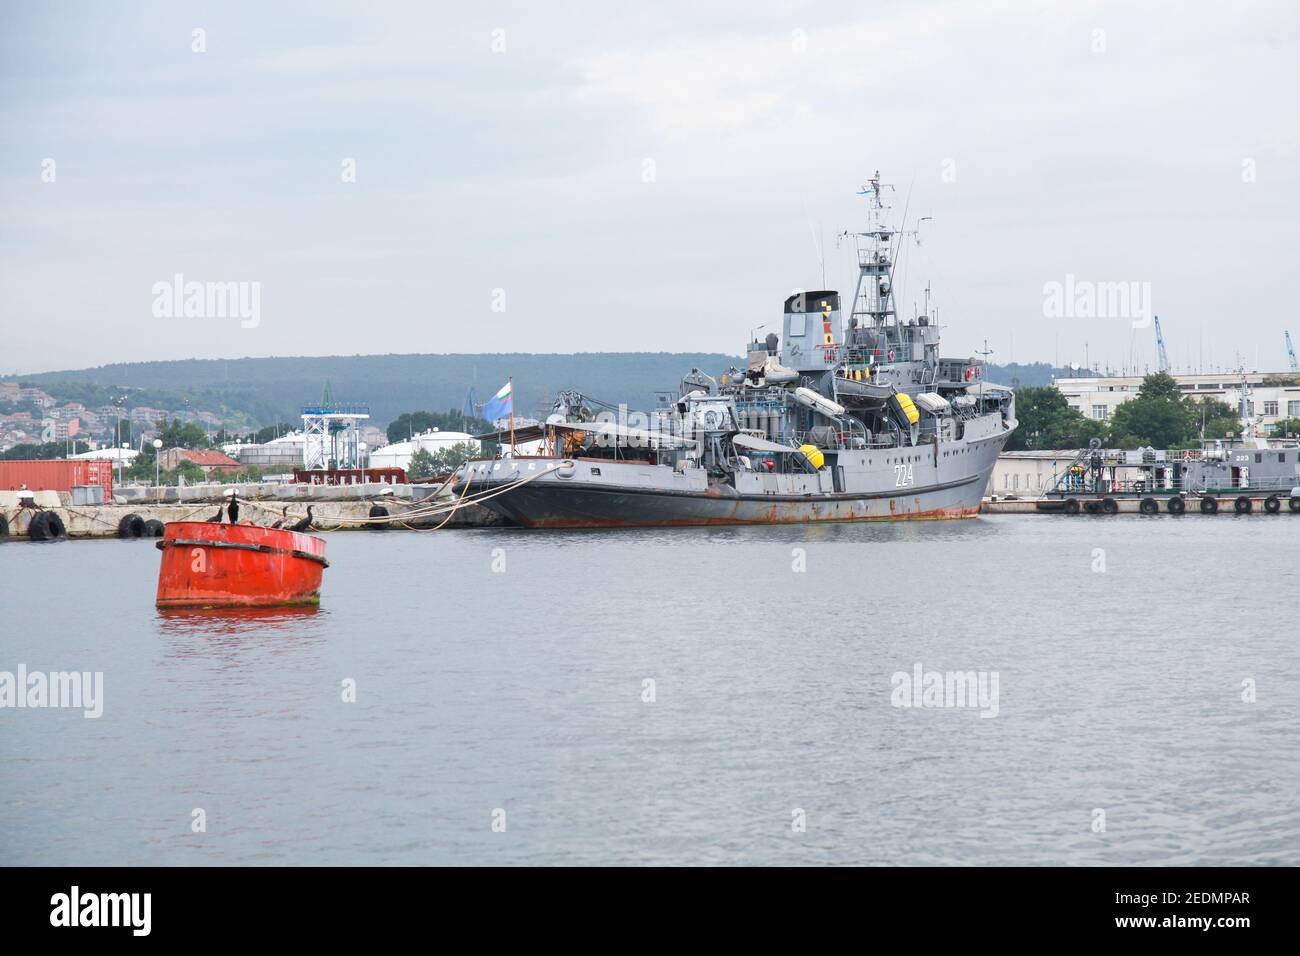 Varna, Bulgarien - 16. Juli 2014: Proteo 224 Rettungsschiff der bulgarischen Marine steht auf Varna Marinestützpunkt, Heck Ansicht Stockfoto